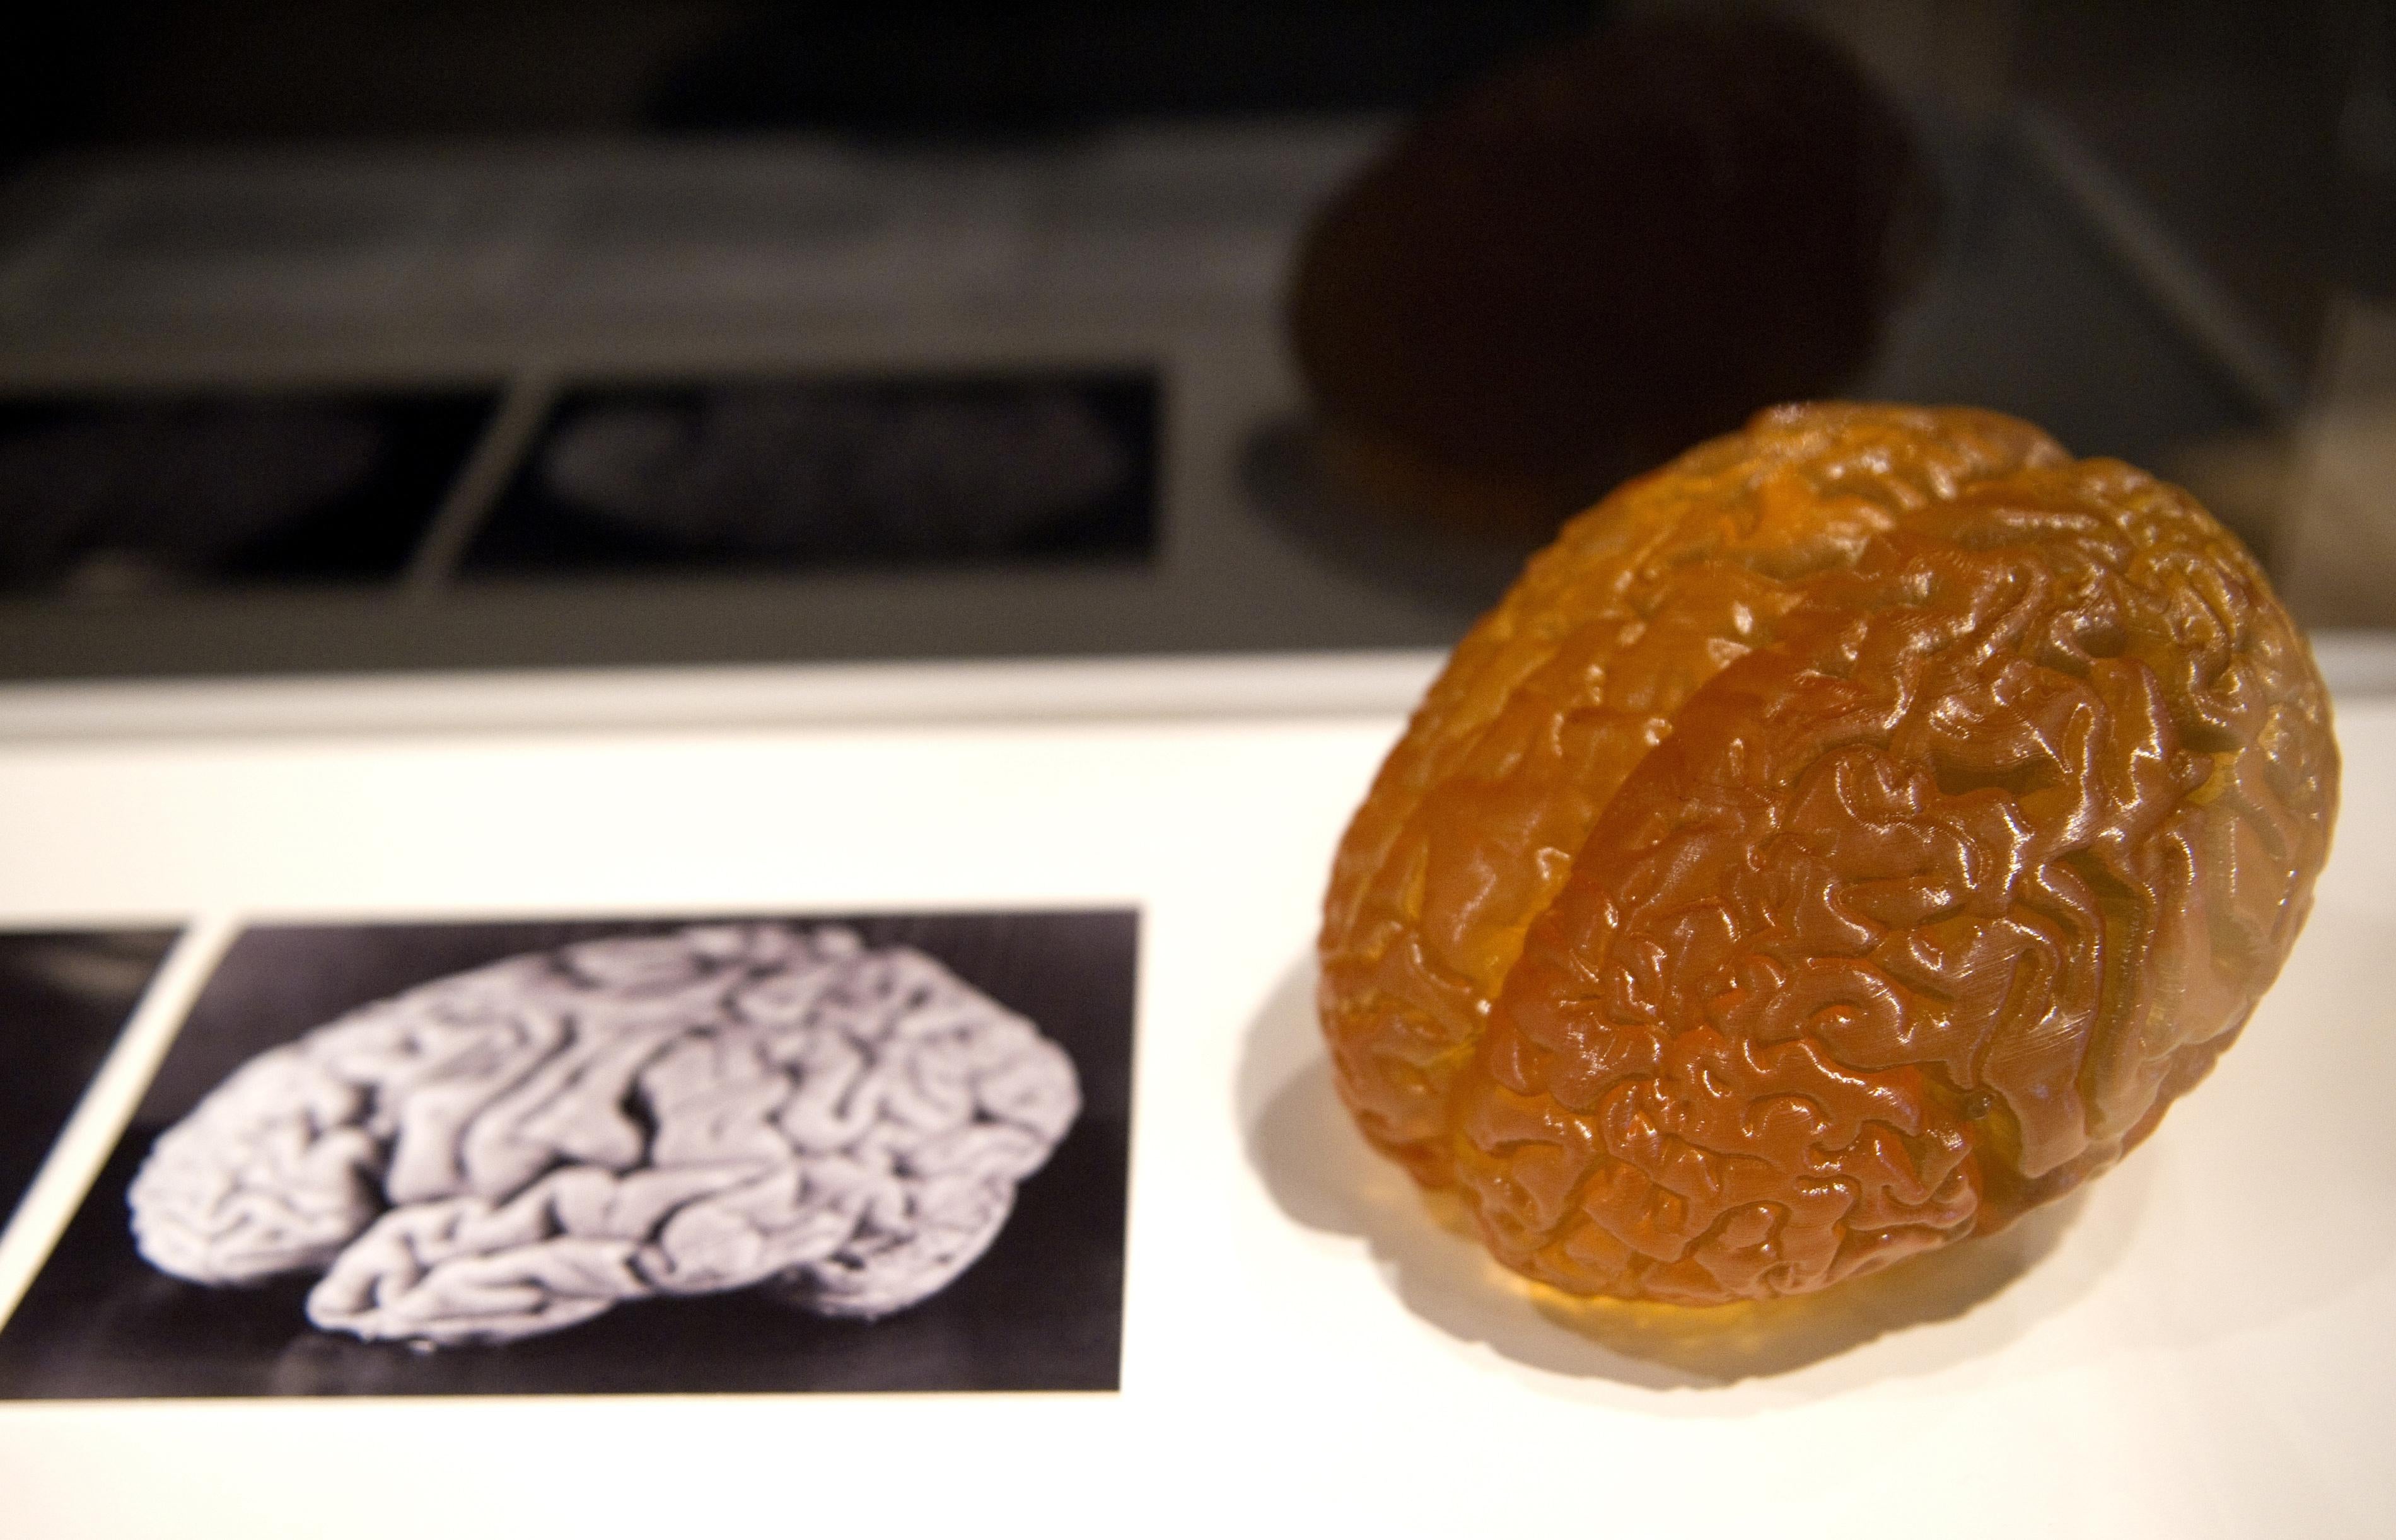 A model of Einstein's brain